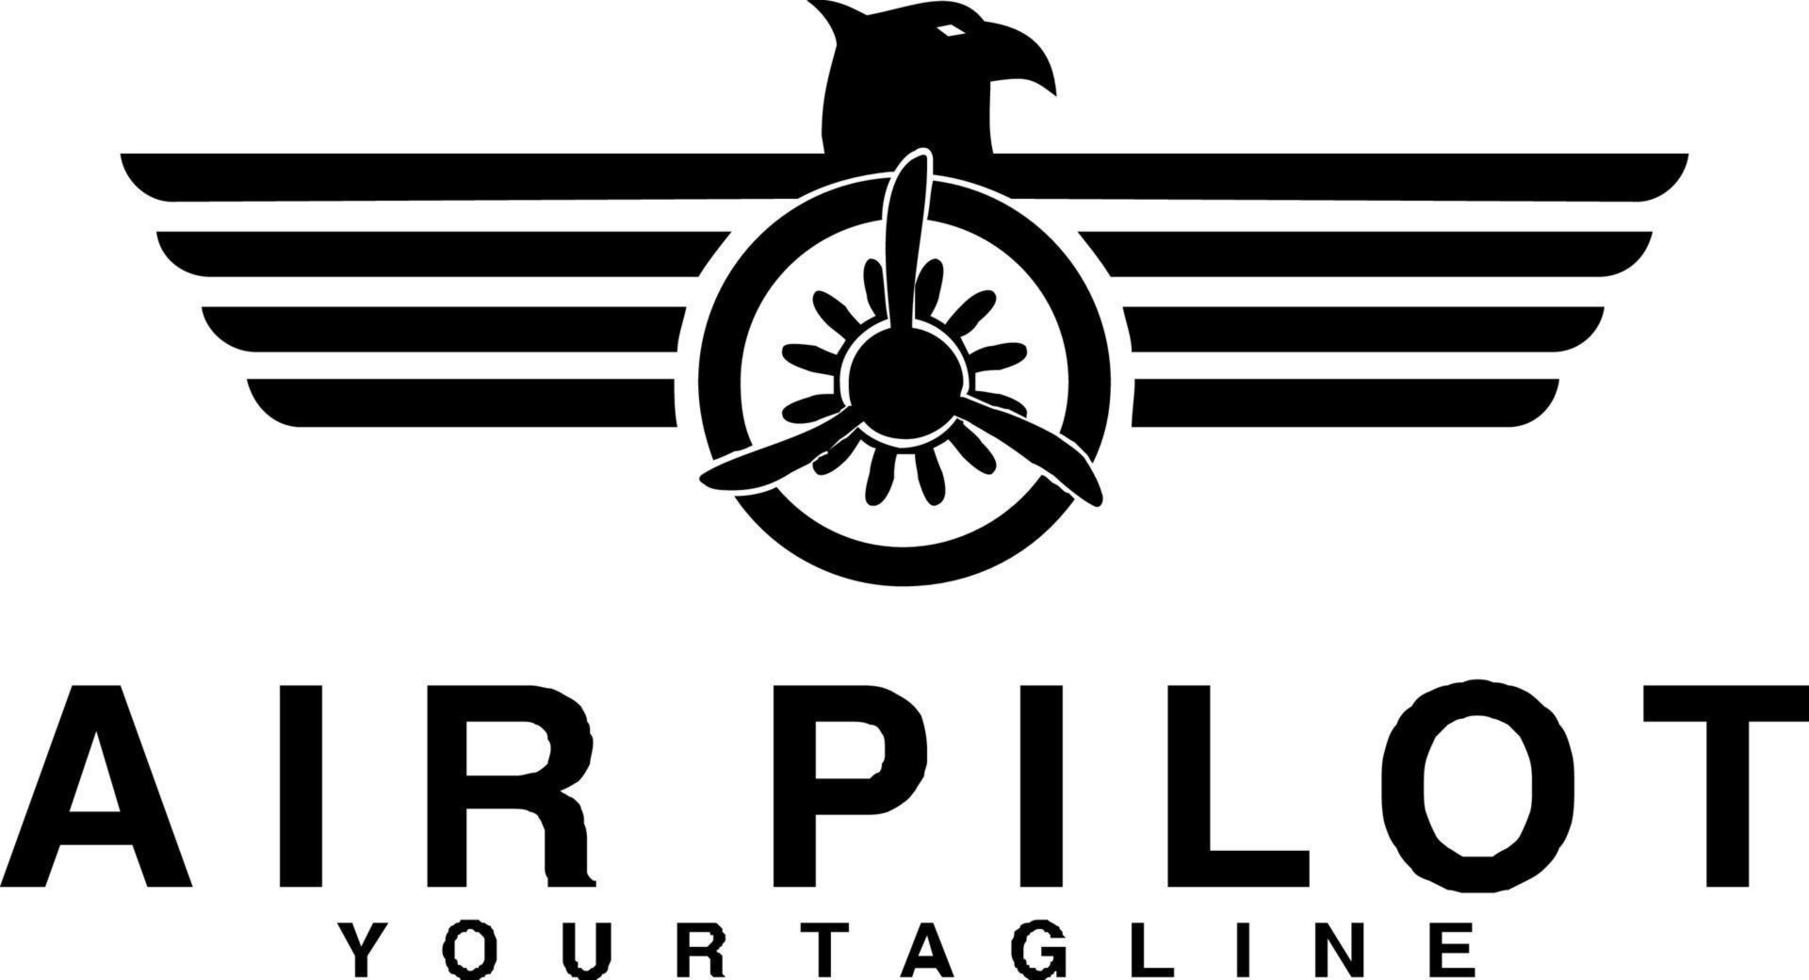 air pilot wings vector logo design